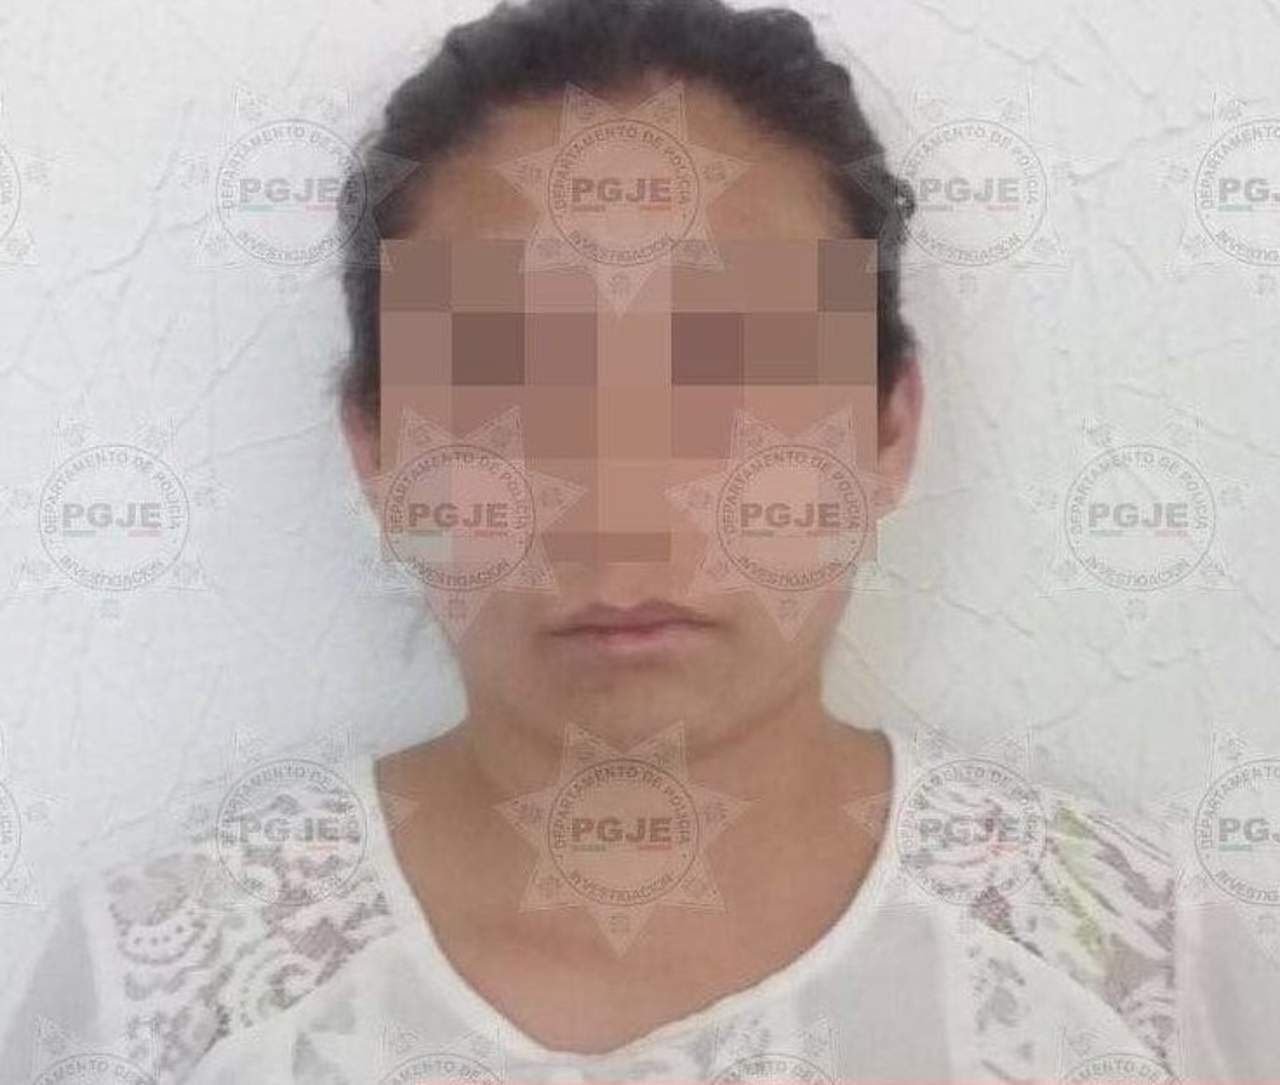 Confirman suicidio de niñera detenida en Tlaxcala por maltrato